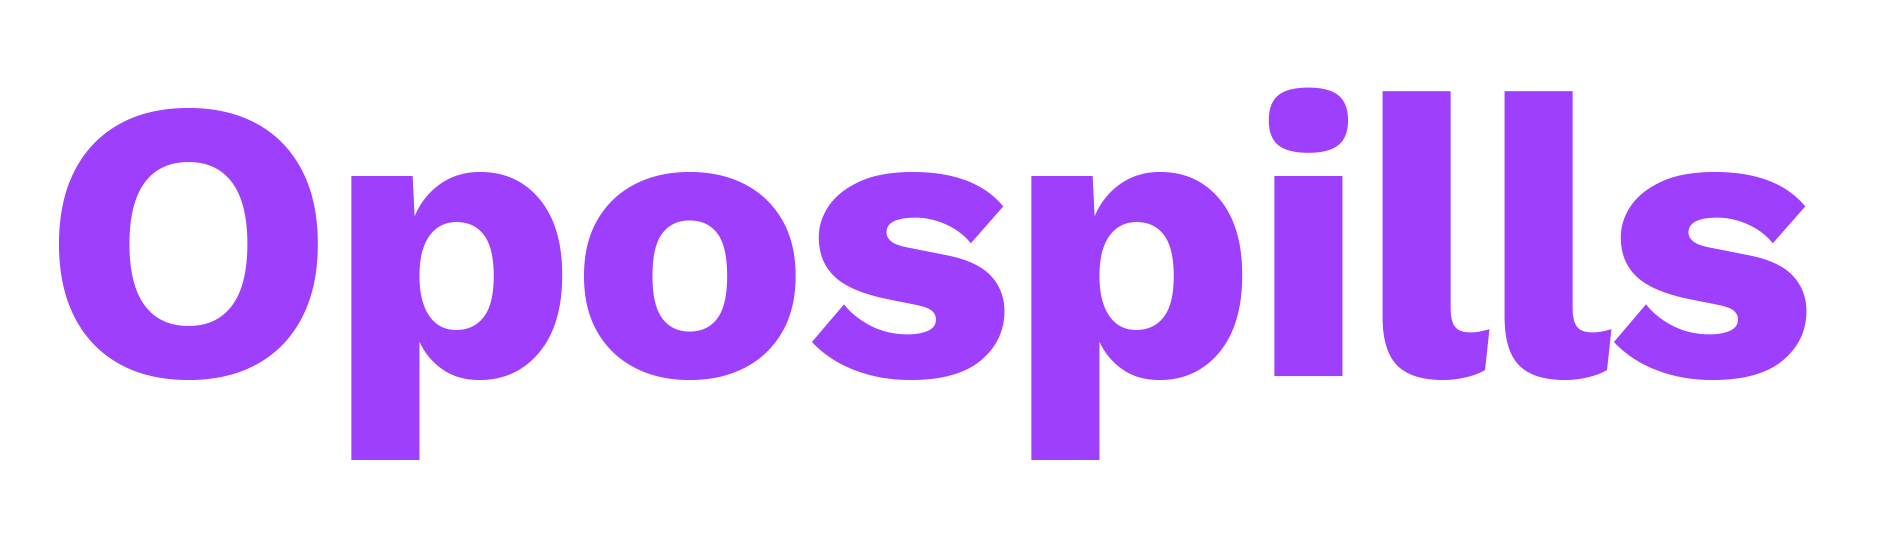 Oposiciones Matemáticas - Opospills